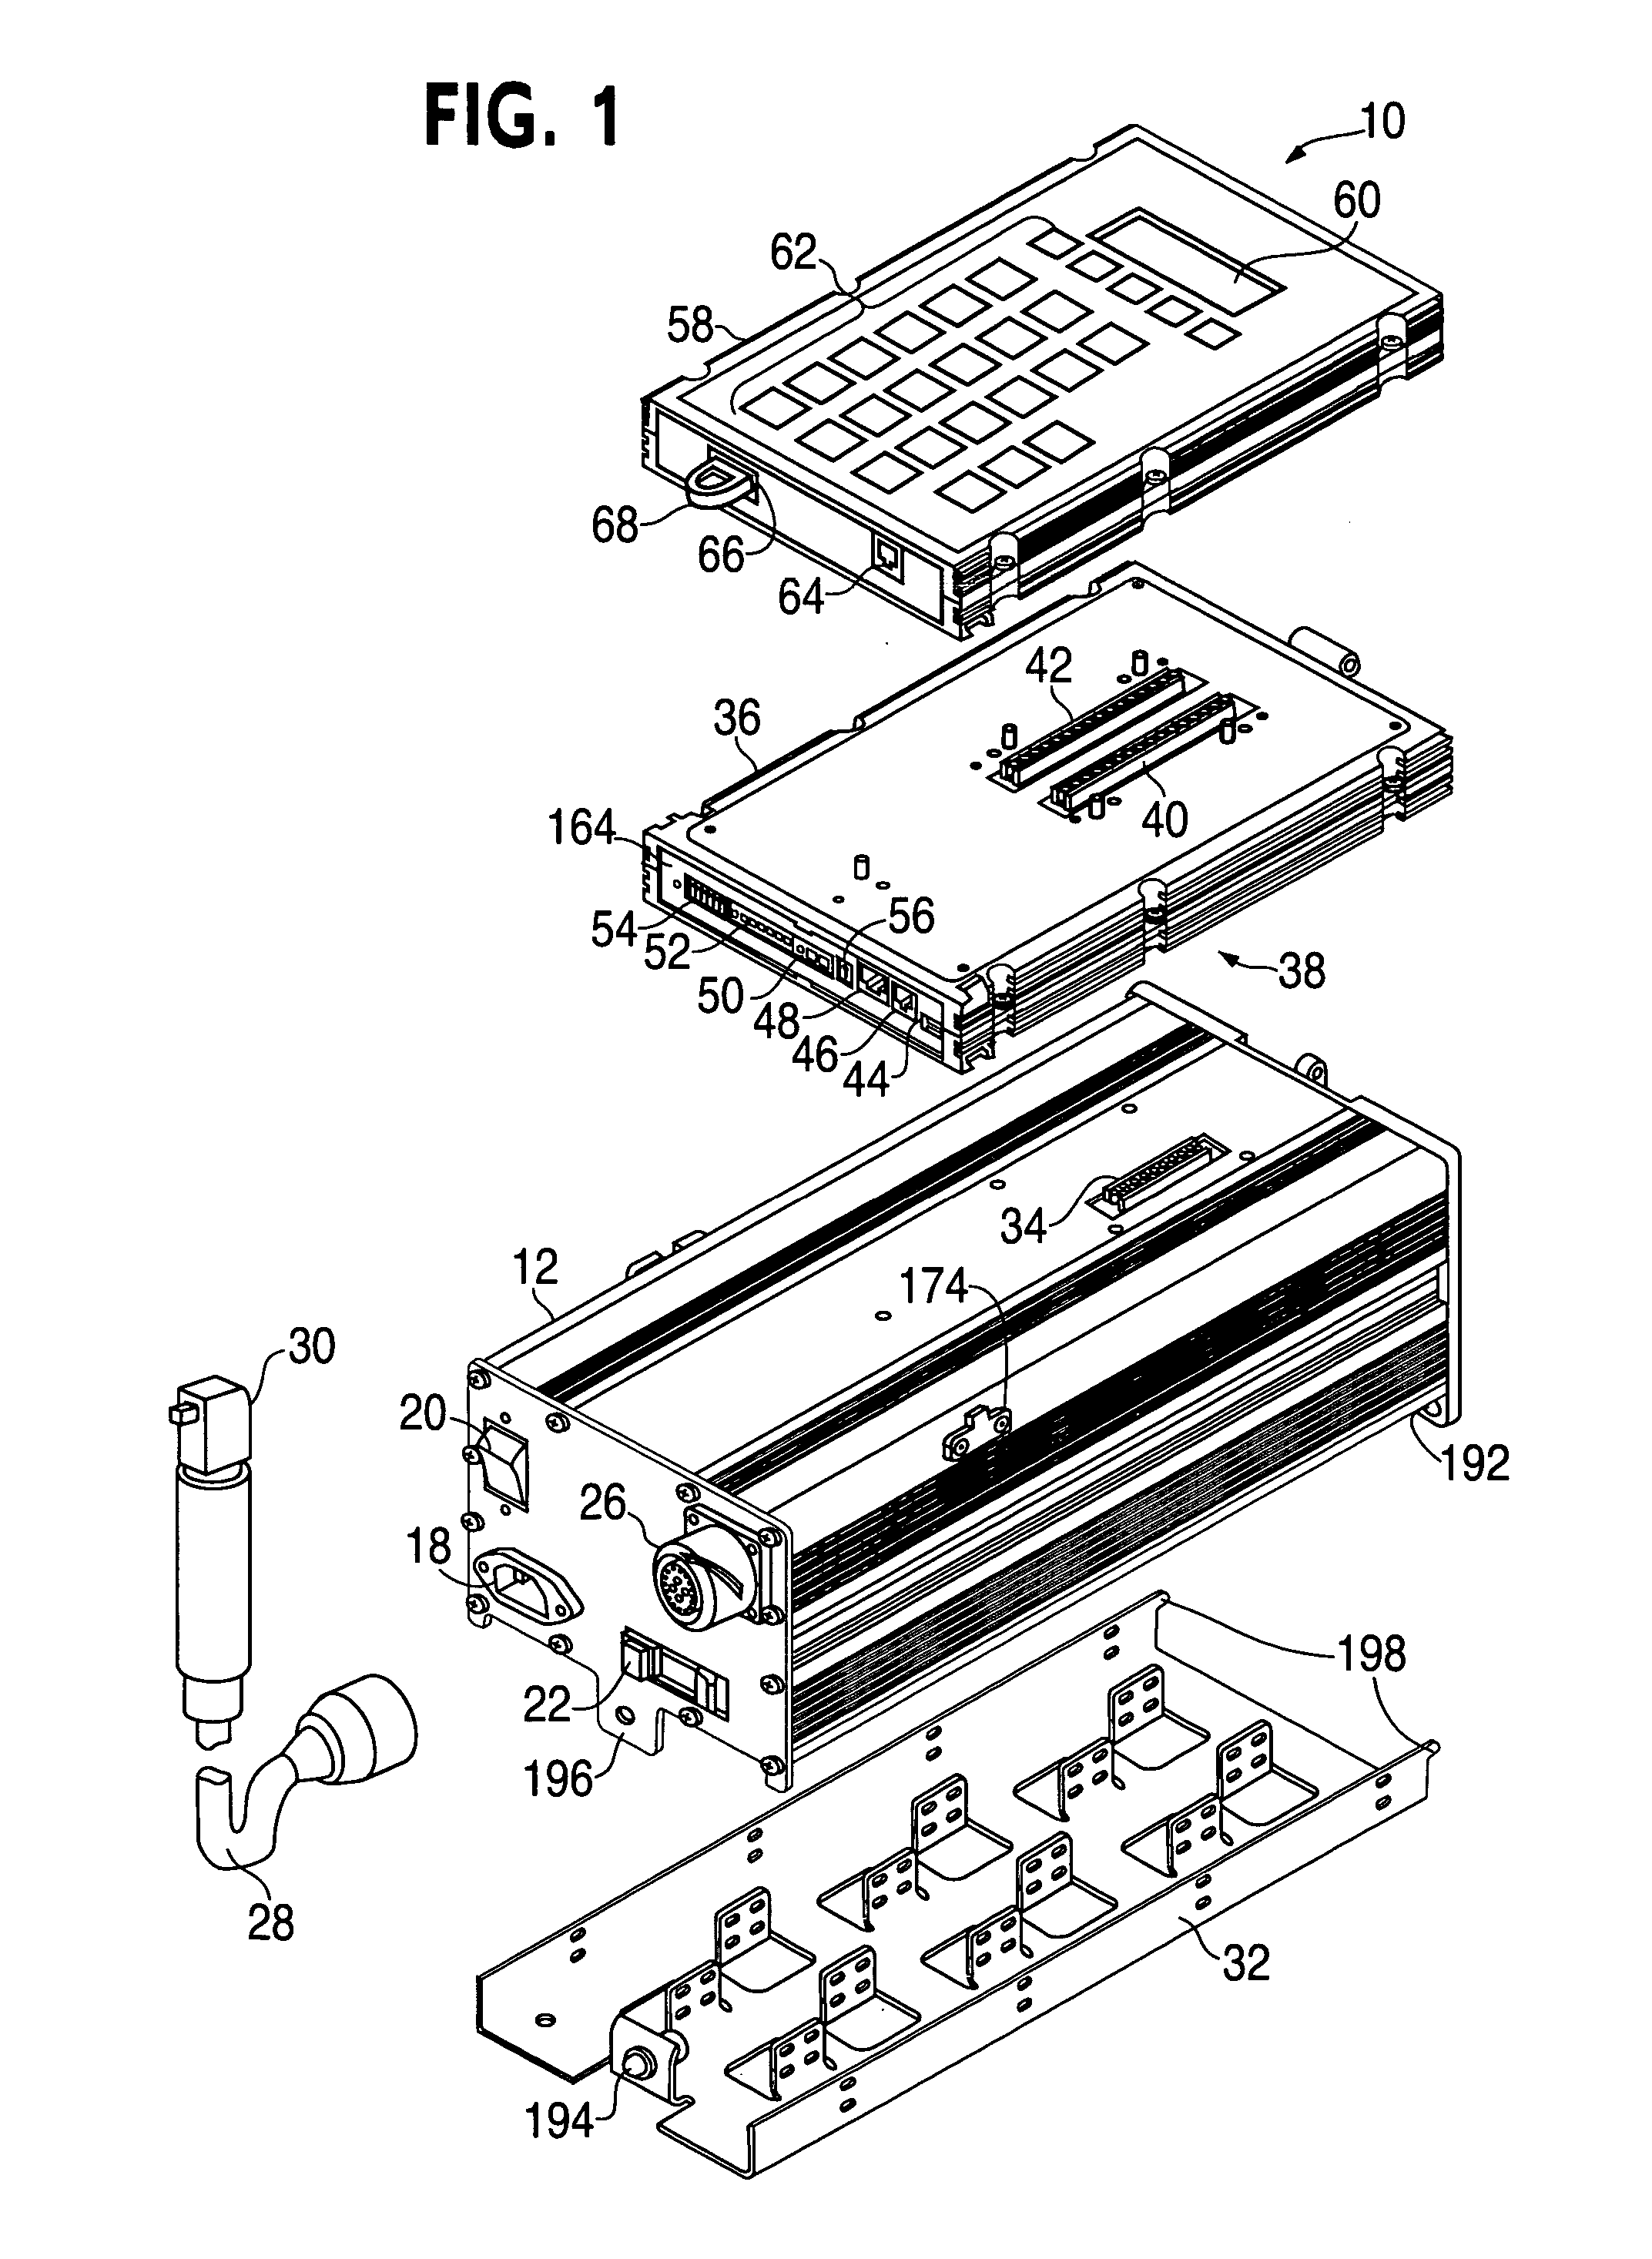 Modular controller apparatus and method